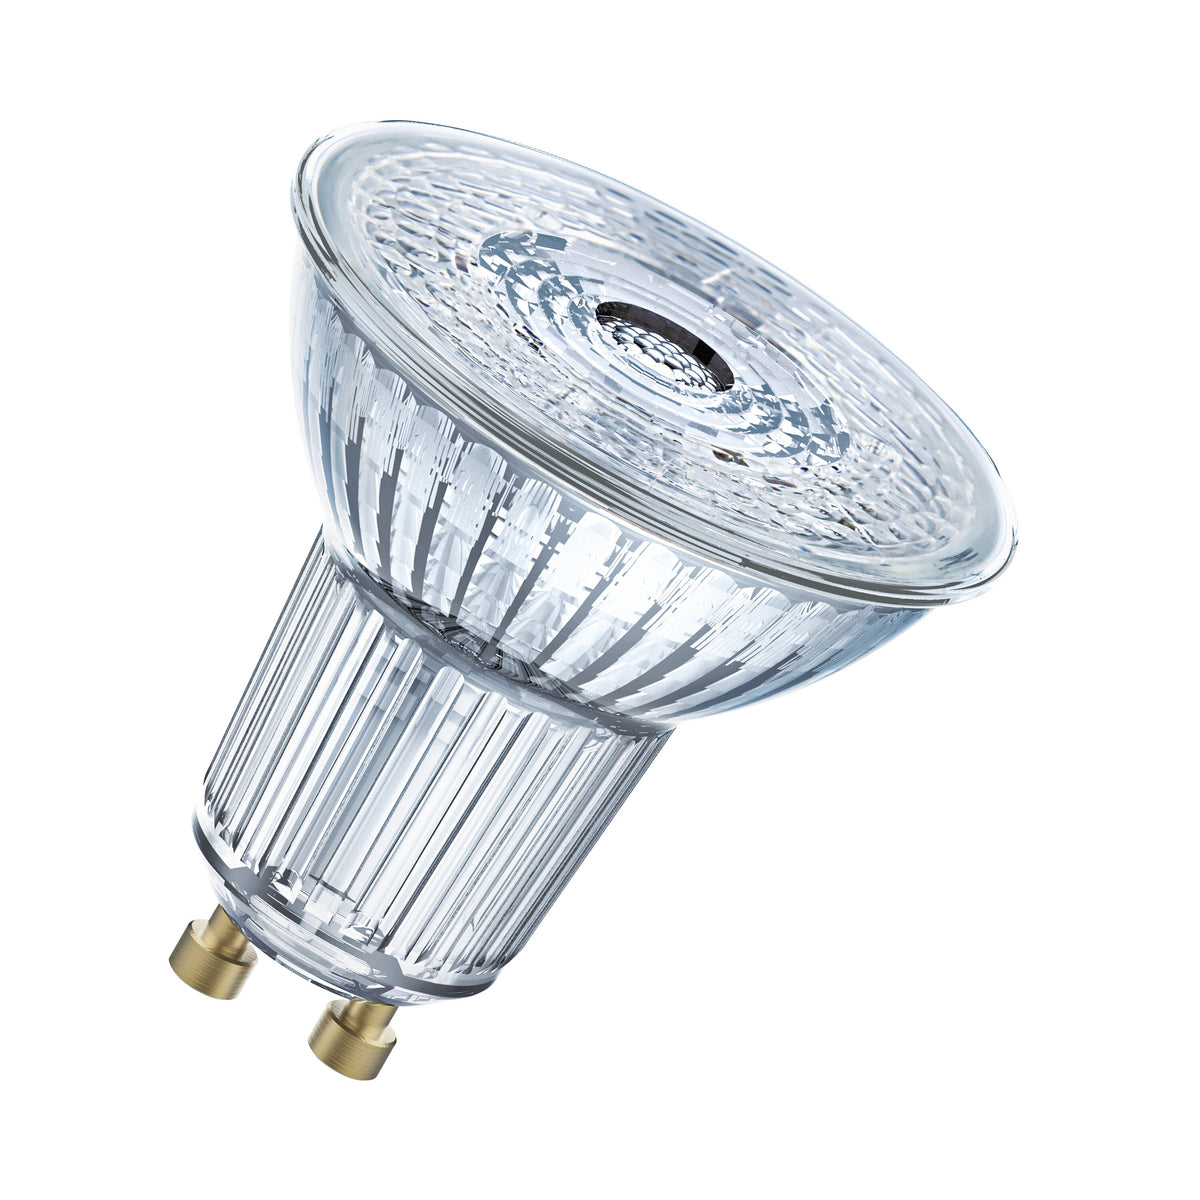 Lampada con riflettore LED OSRAM PAR16 dimmerabile con attacco GU10, bianco freddo (4000K), spot in vetro, 3,7 W, ricambio per lampada con riflettore da 35 W, LED SUPERSTAR PAR16